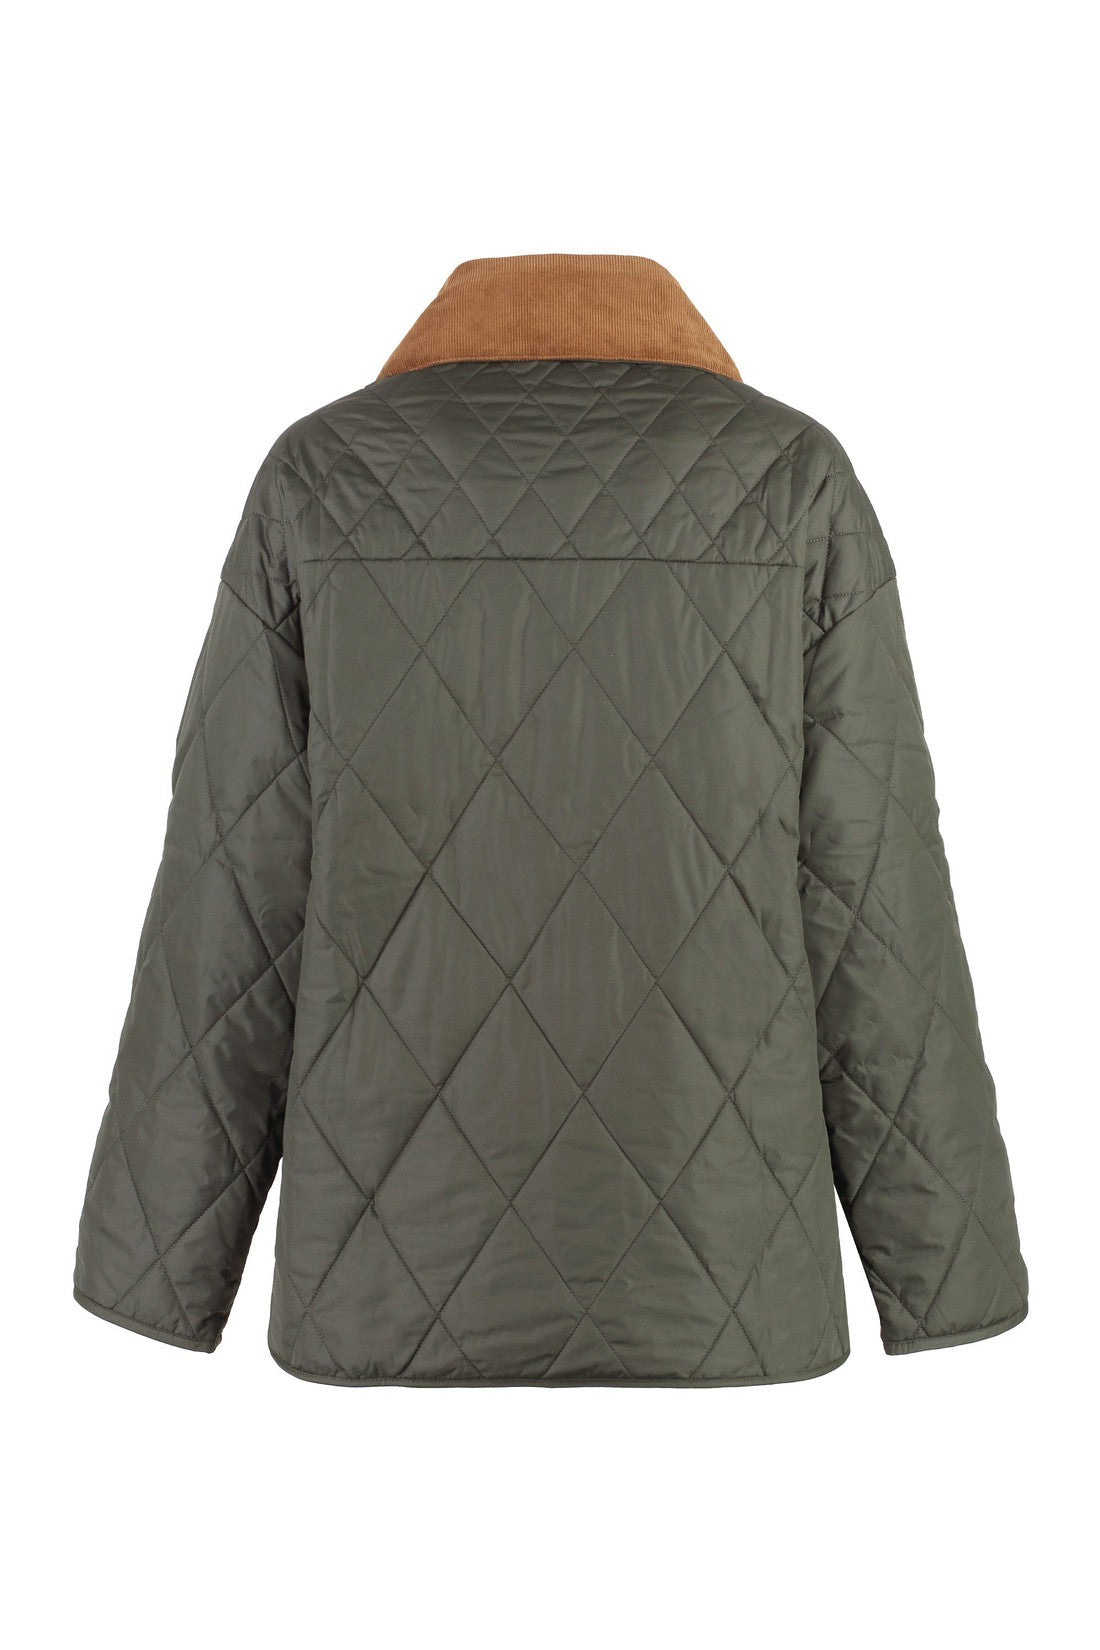 Barbour-OUTLET-SALE-Nylon jacket-ARCHIVIST